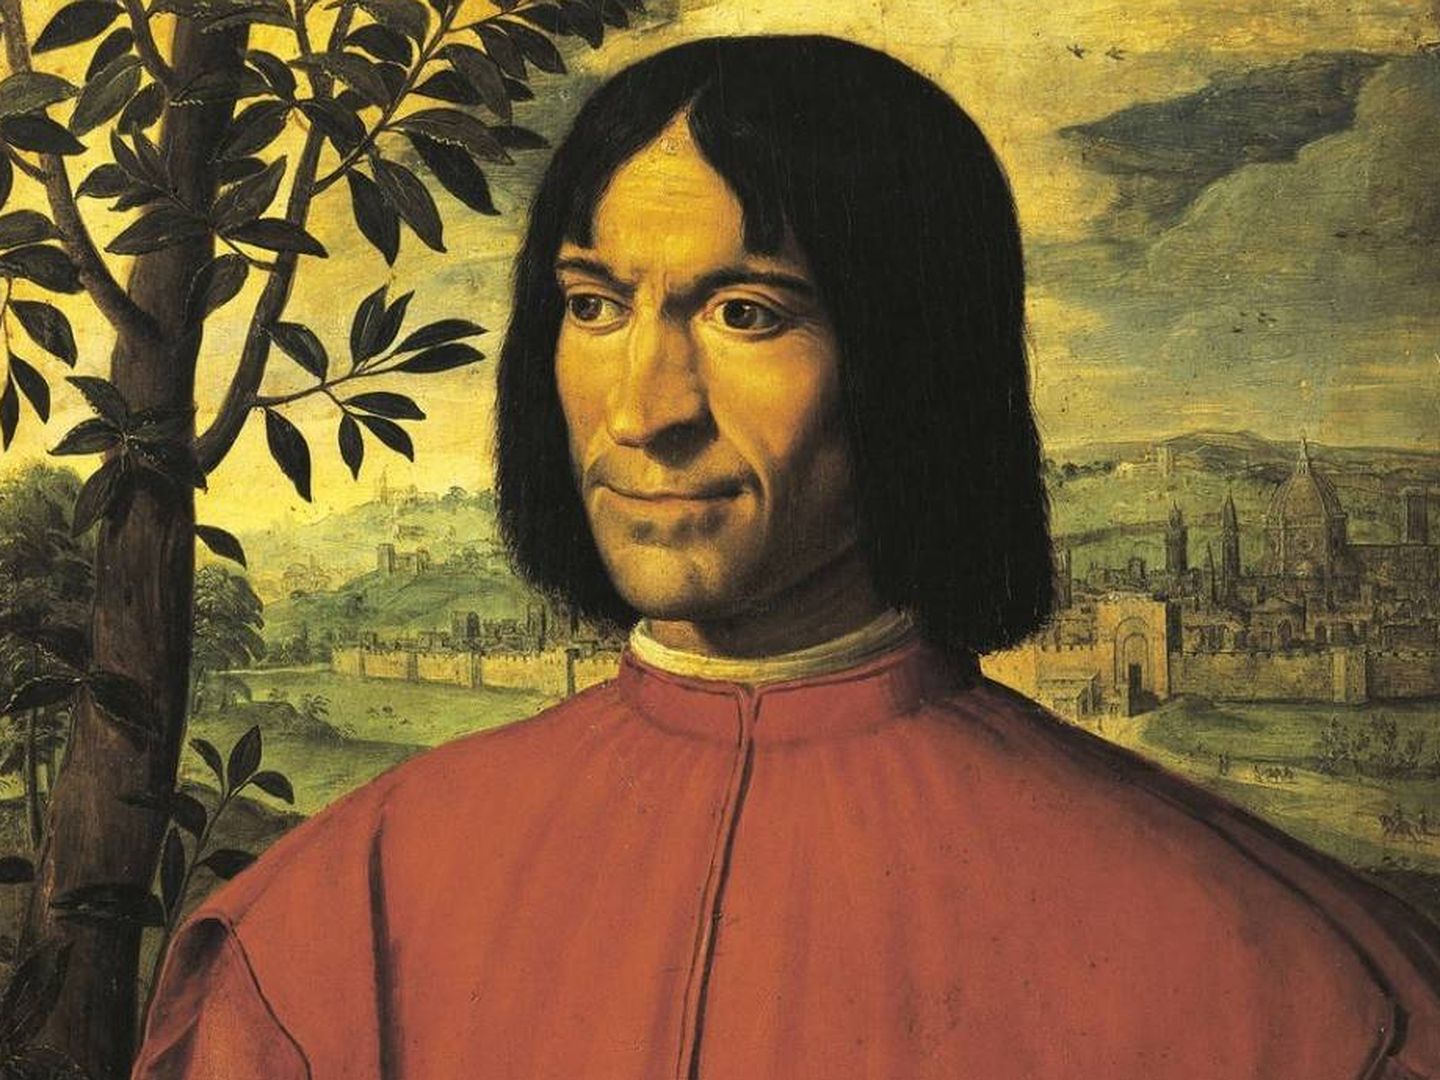 Este era Lorenzo de Médici, el mecenas que amparó a muchos artistas en la Florencia del siglo XV